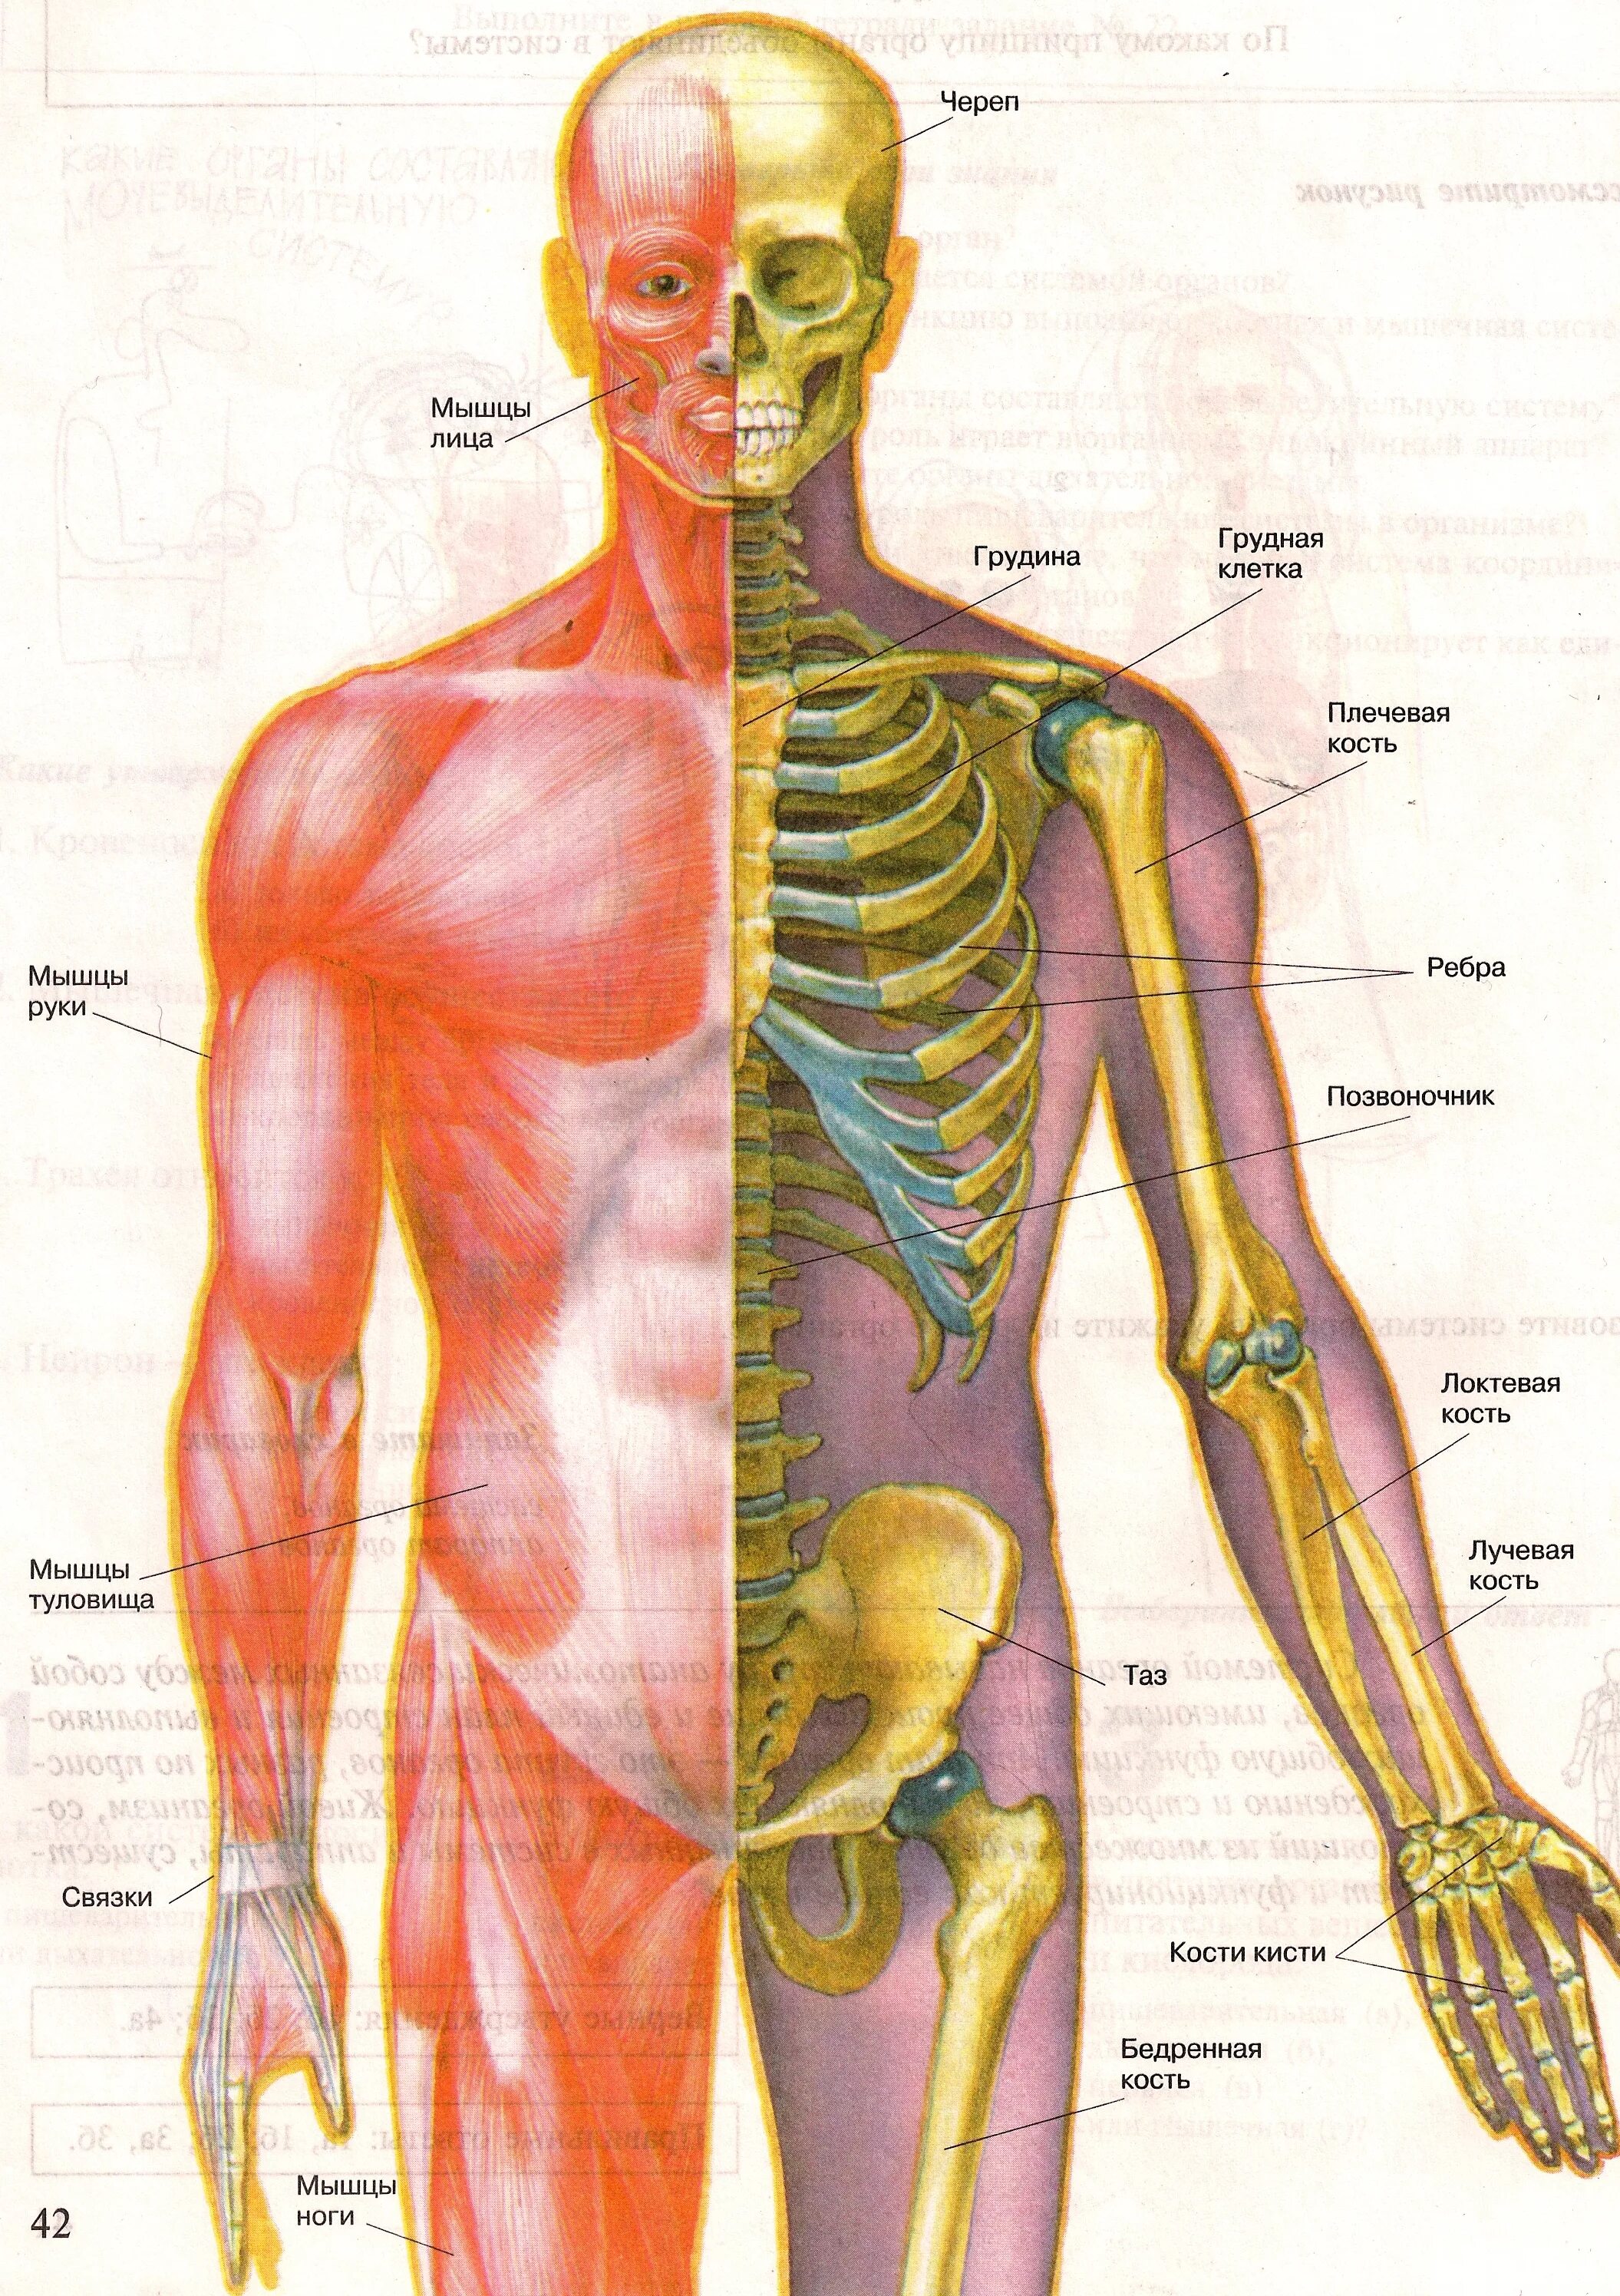 Мышцы орган человека. Строение скелета опорно двигательная система. Болезни костно-мышечной системы (опорно-двигательного аппарата). Опорно двигательная система мышцы человека анатомия. Строение опорно-двигательной системы человека (мышечная система)..